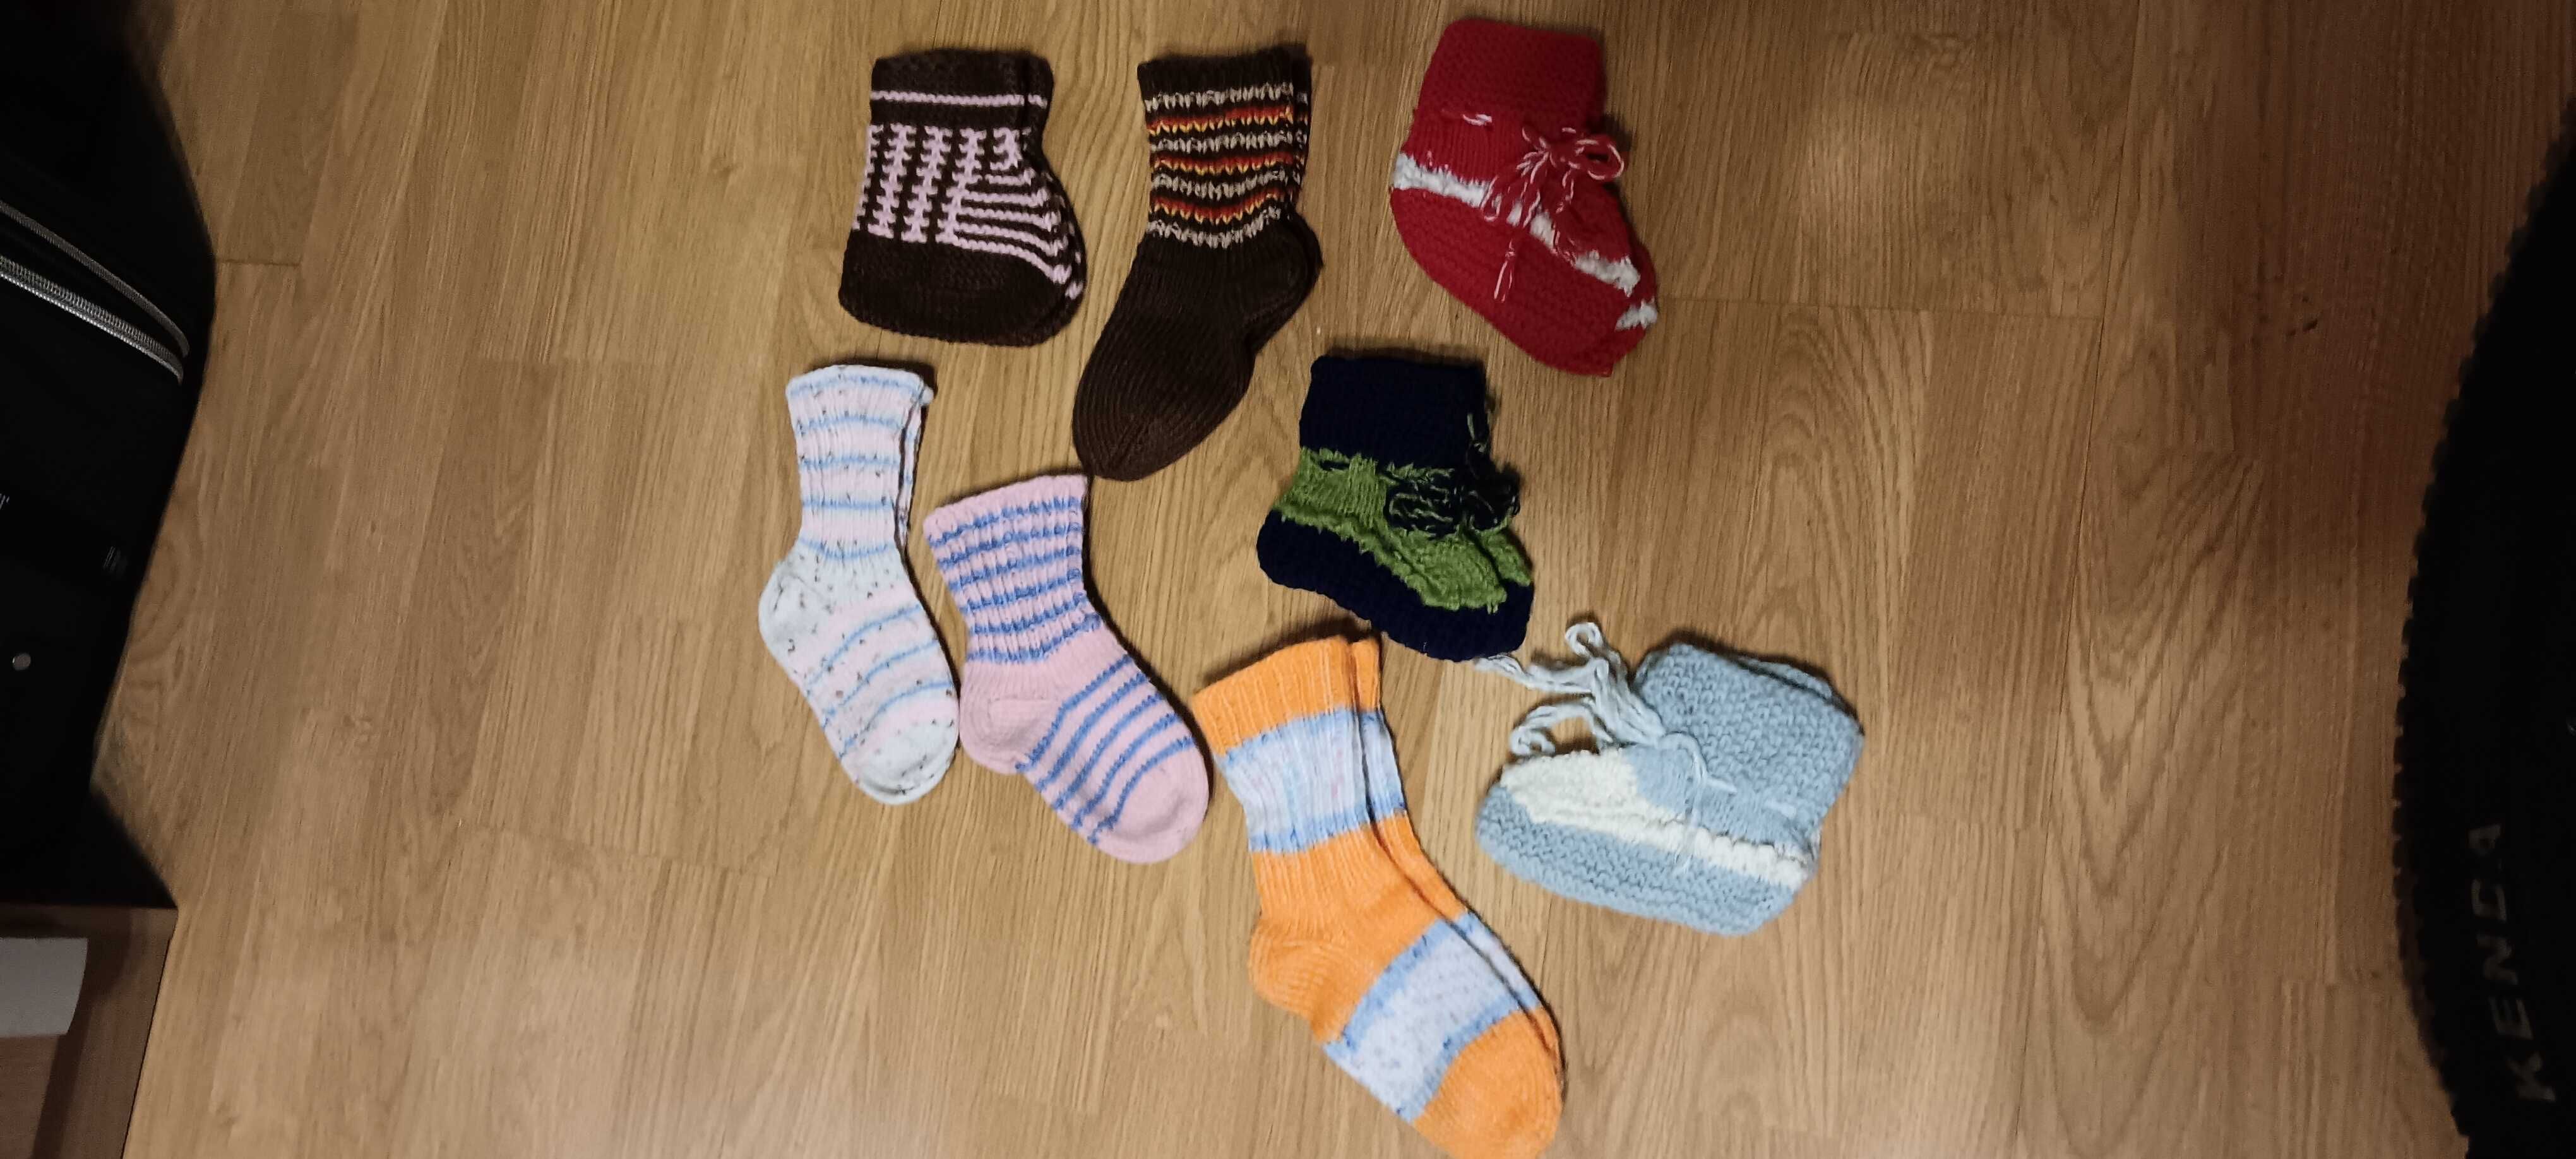 Ръчно плетени чорапи и терлици за деца и възрастни